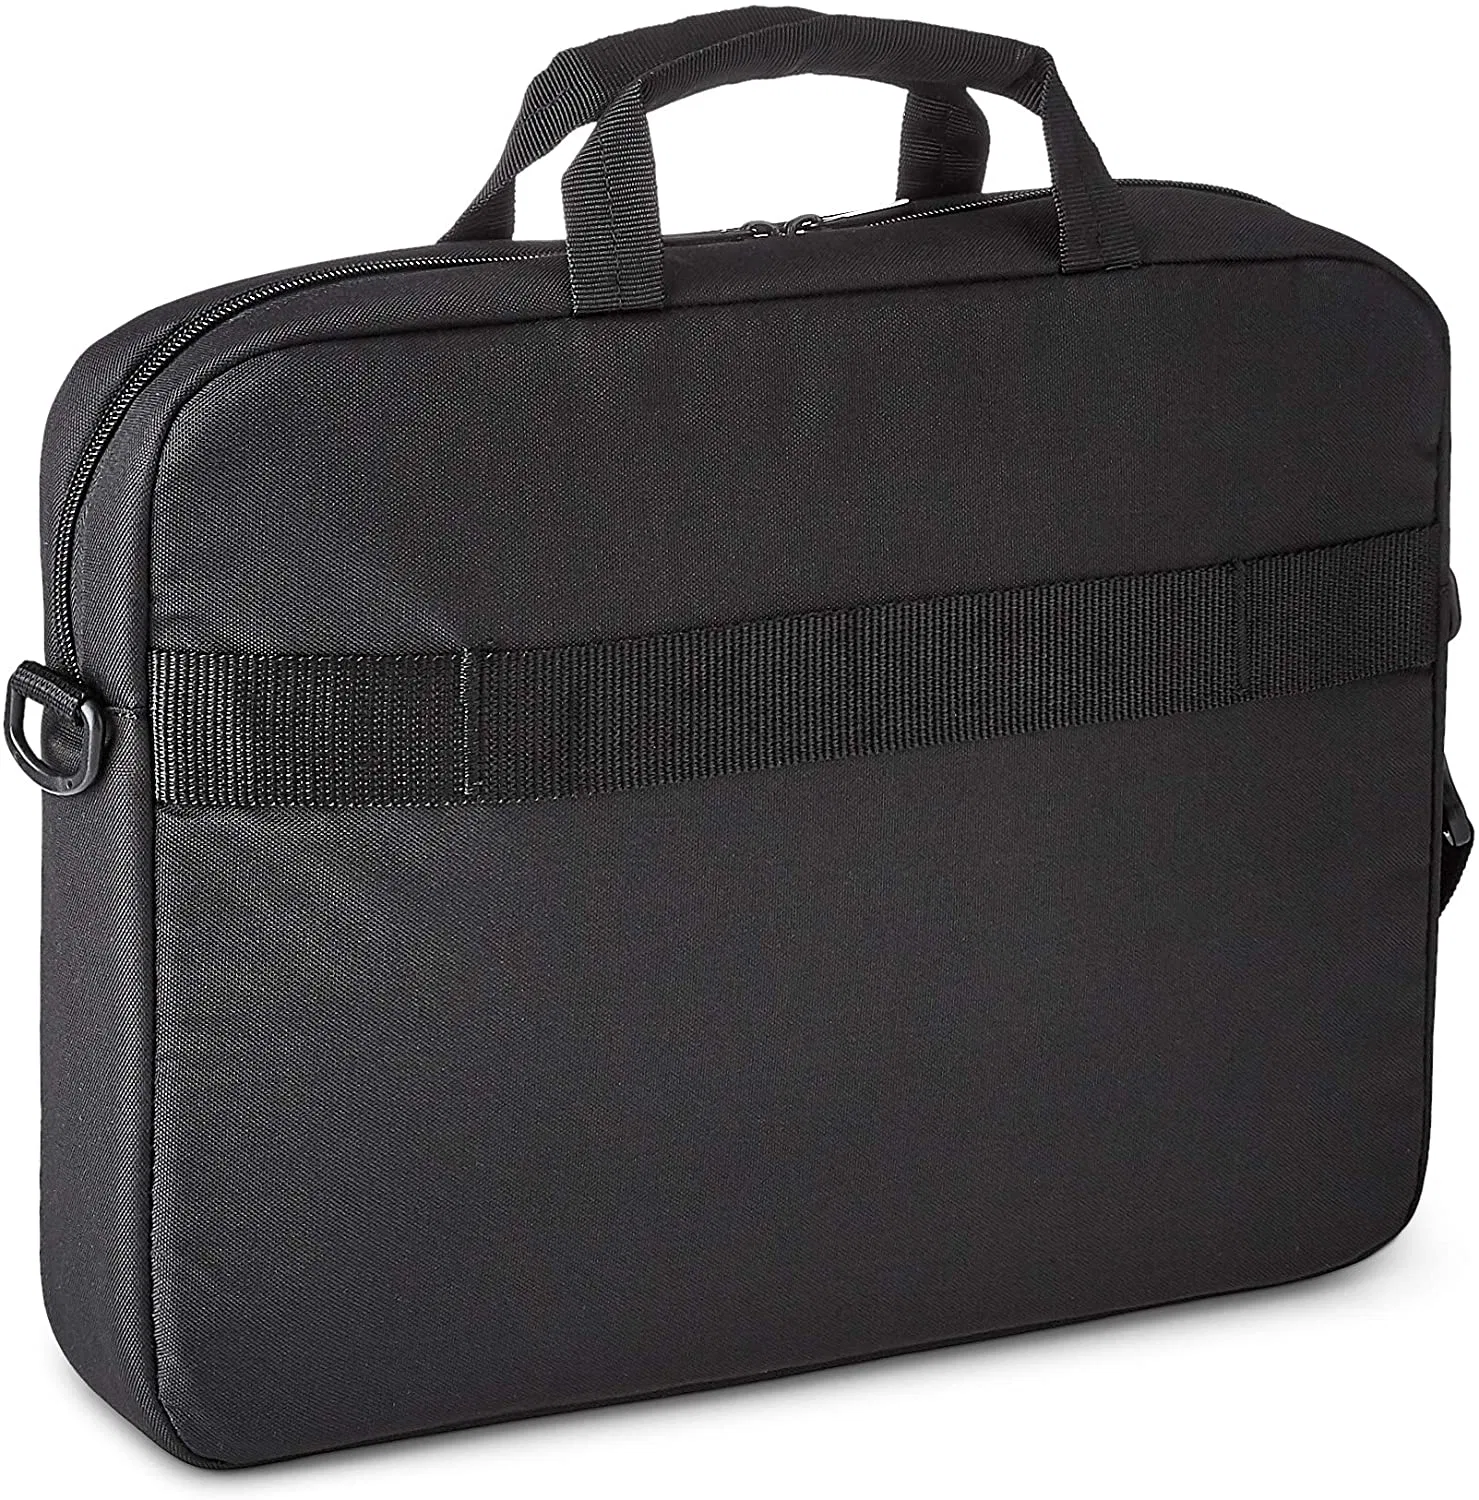 15.6 Inch Laptop Computer and Tablet Shoulder Bag Carrying Case for Men Women